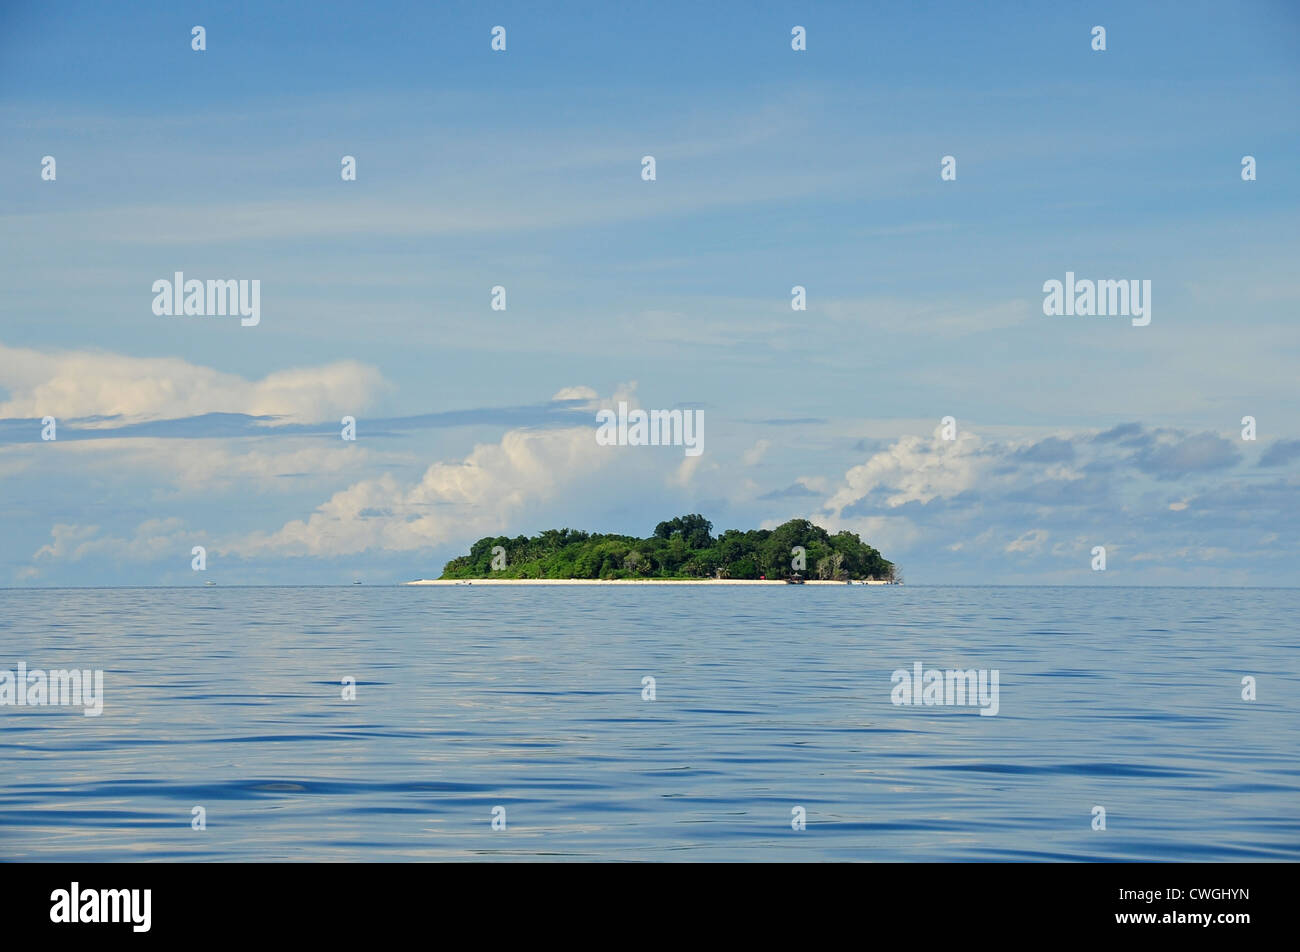 Malaysia, Borneo, Semporna Archipelago, Sipadan, view of the island from the boat Stock Photo